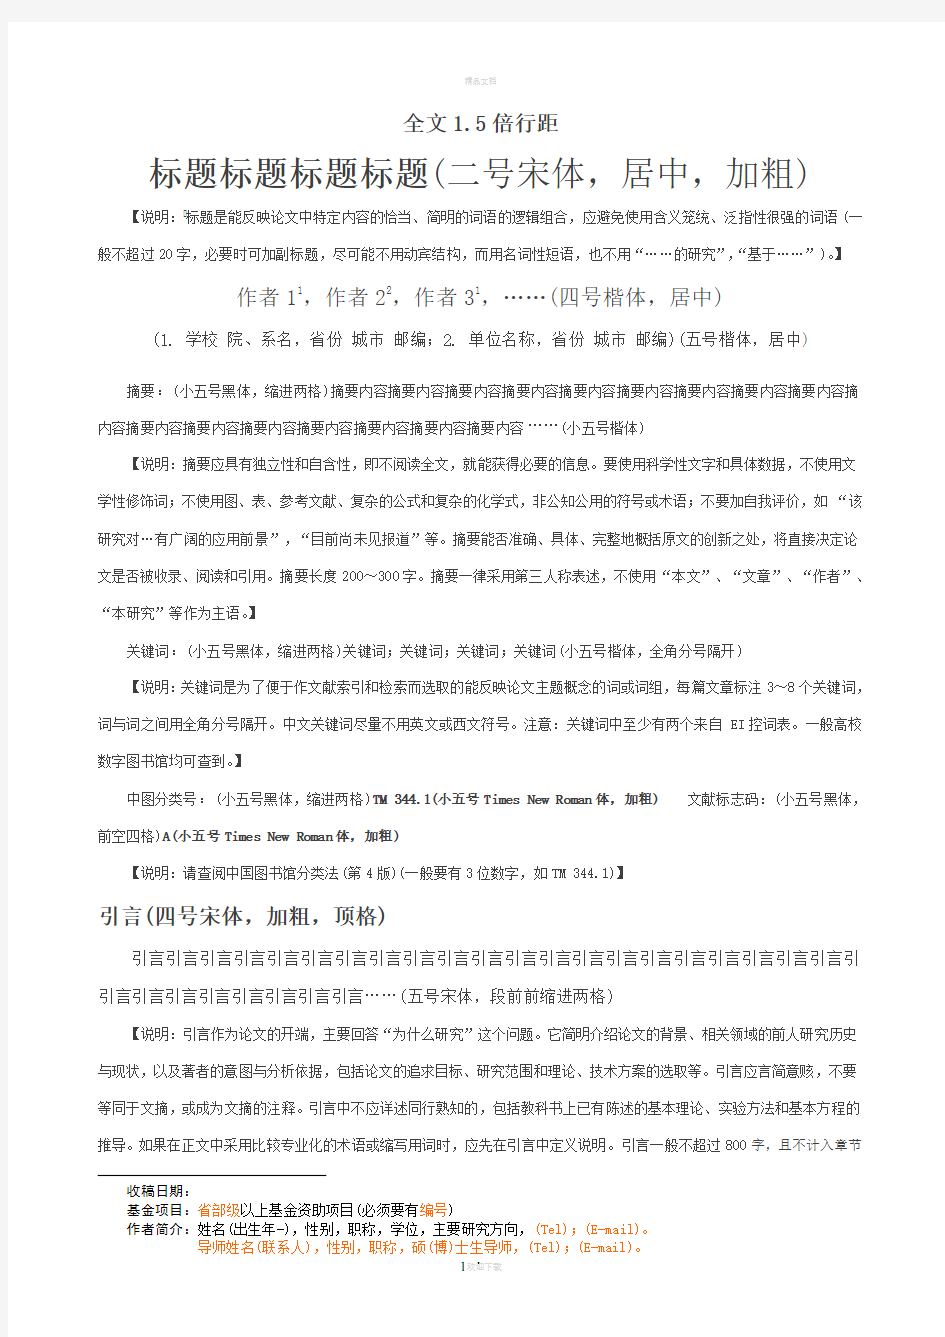 中文核心期刊论文模板(含基本格式和内容要求)